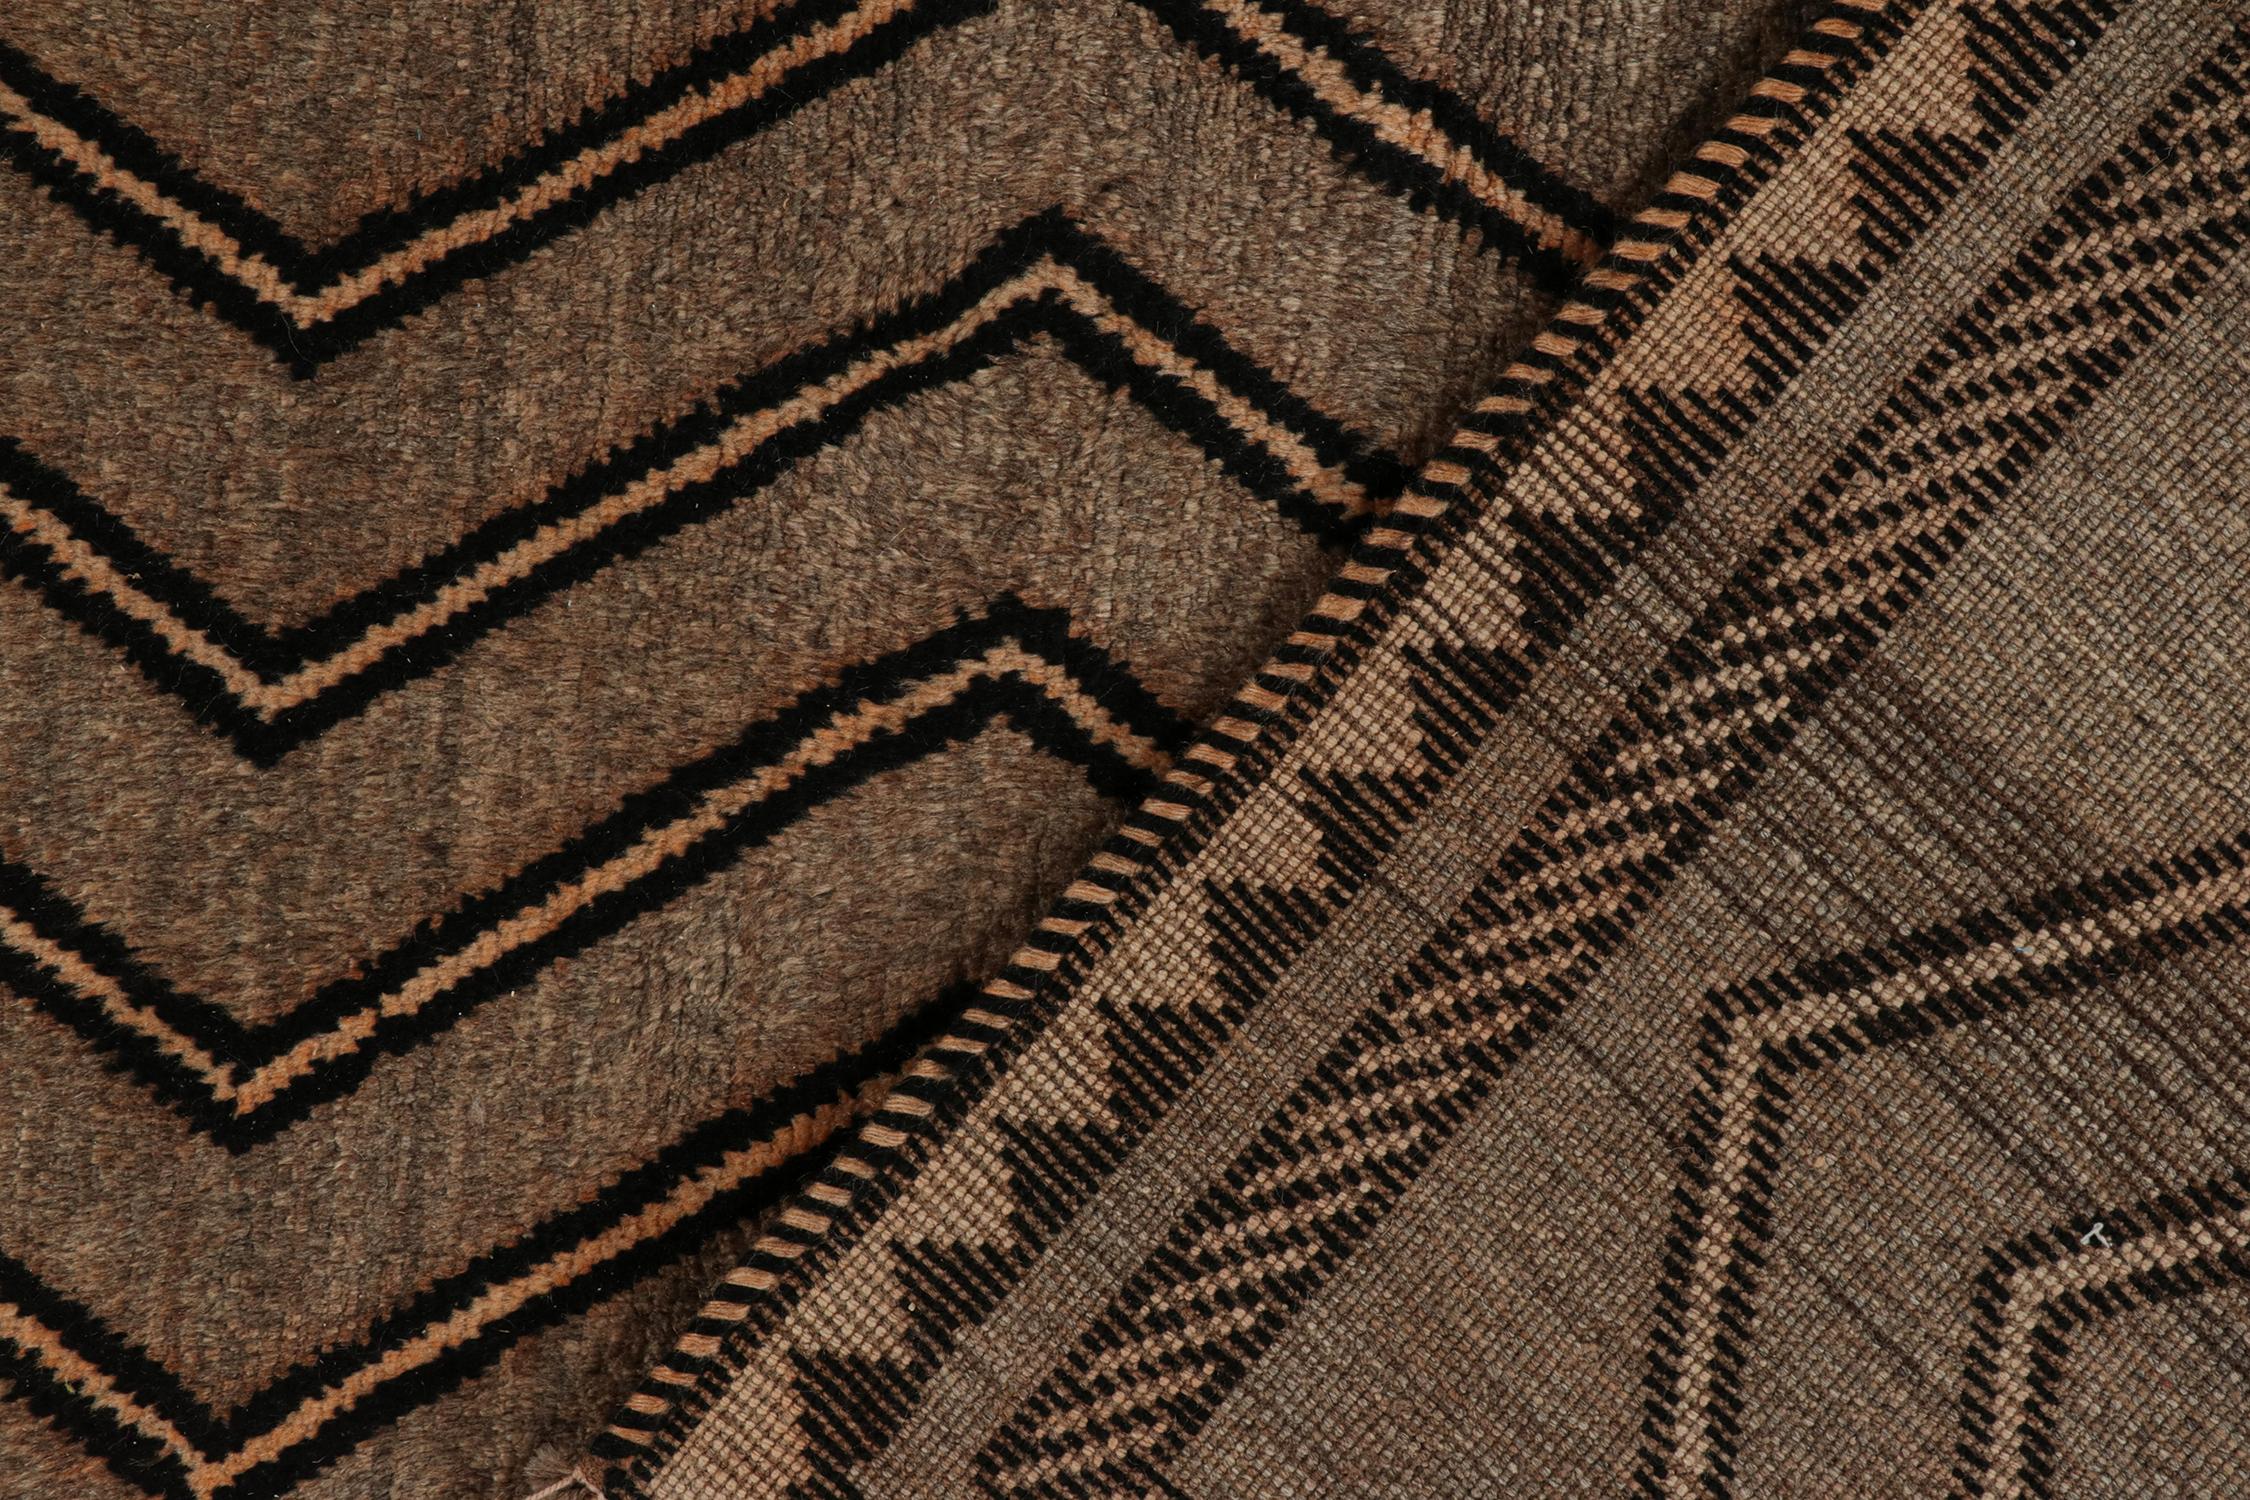 Wool Vintage Gabbeh Tribal Rug in Beige-Brown & Black Chevron Patterns by Rug Kilim For Sale